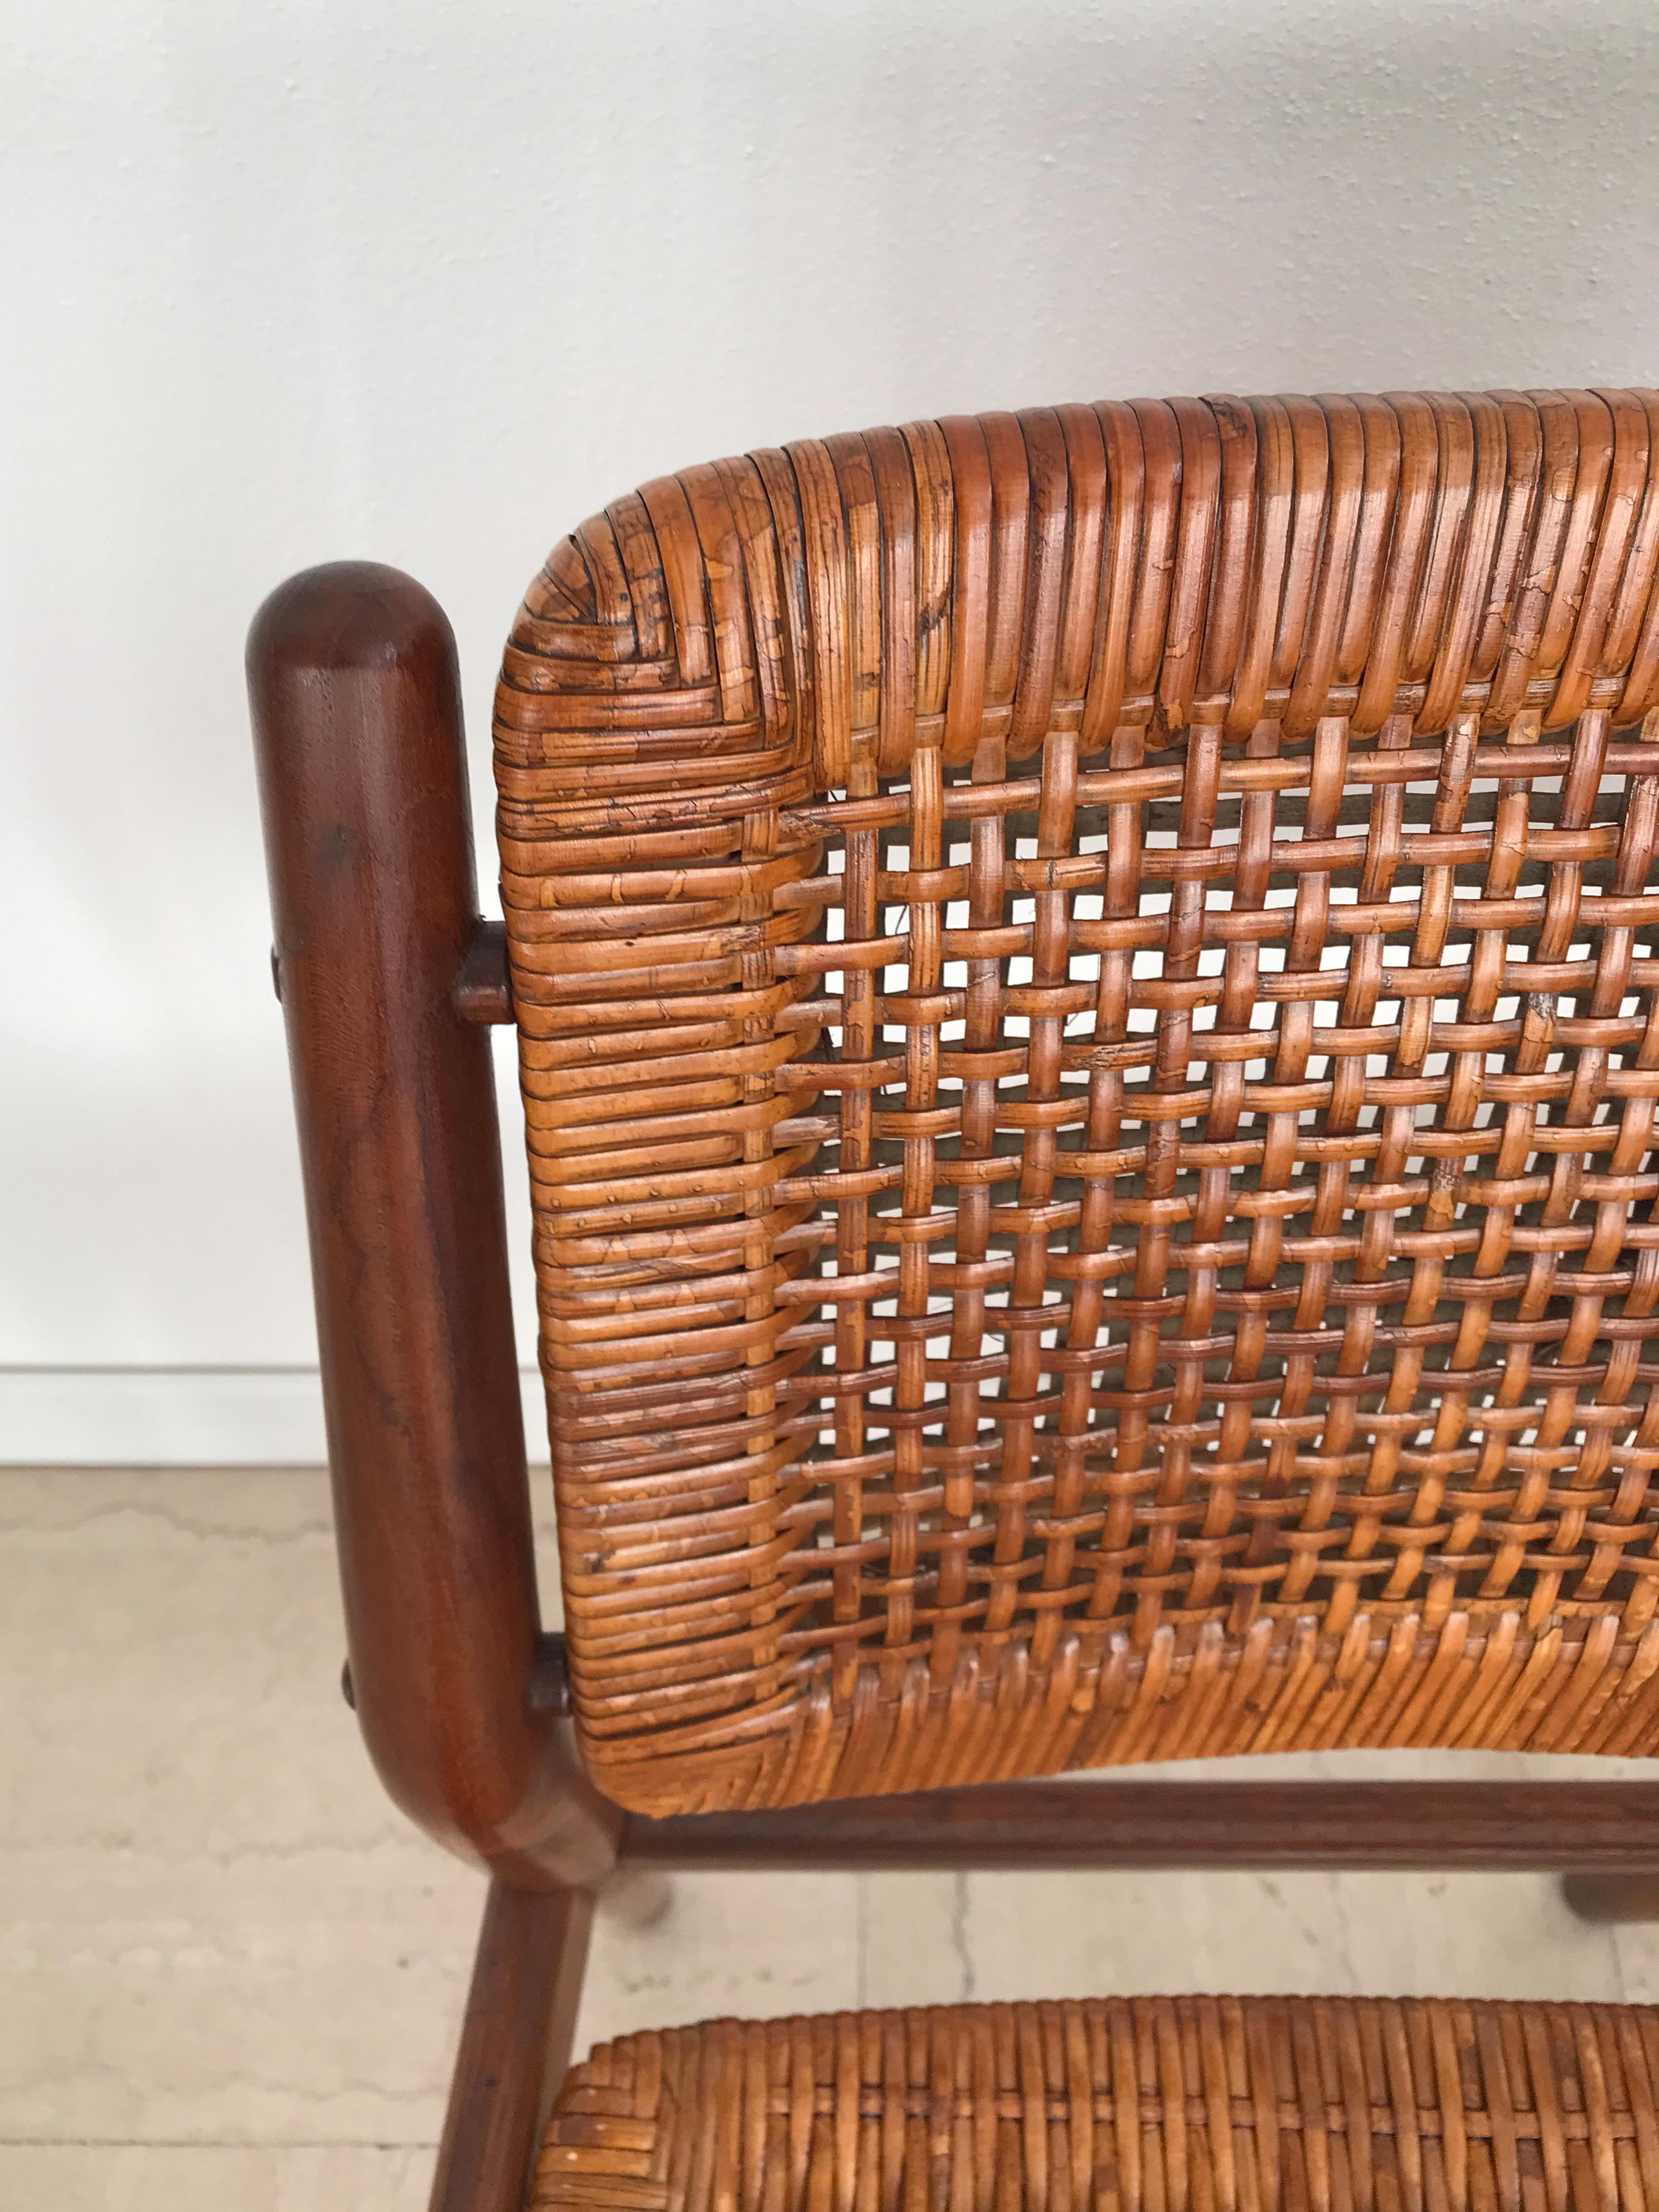 Arne Vodder Midcentury Scandinavian Teak Rattan Chairs for Sibast 1950s For Sale 5